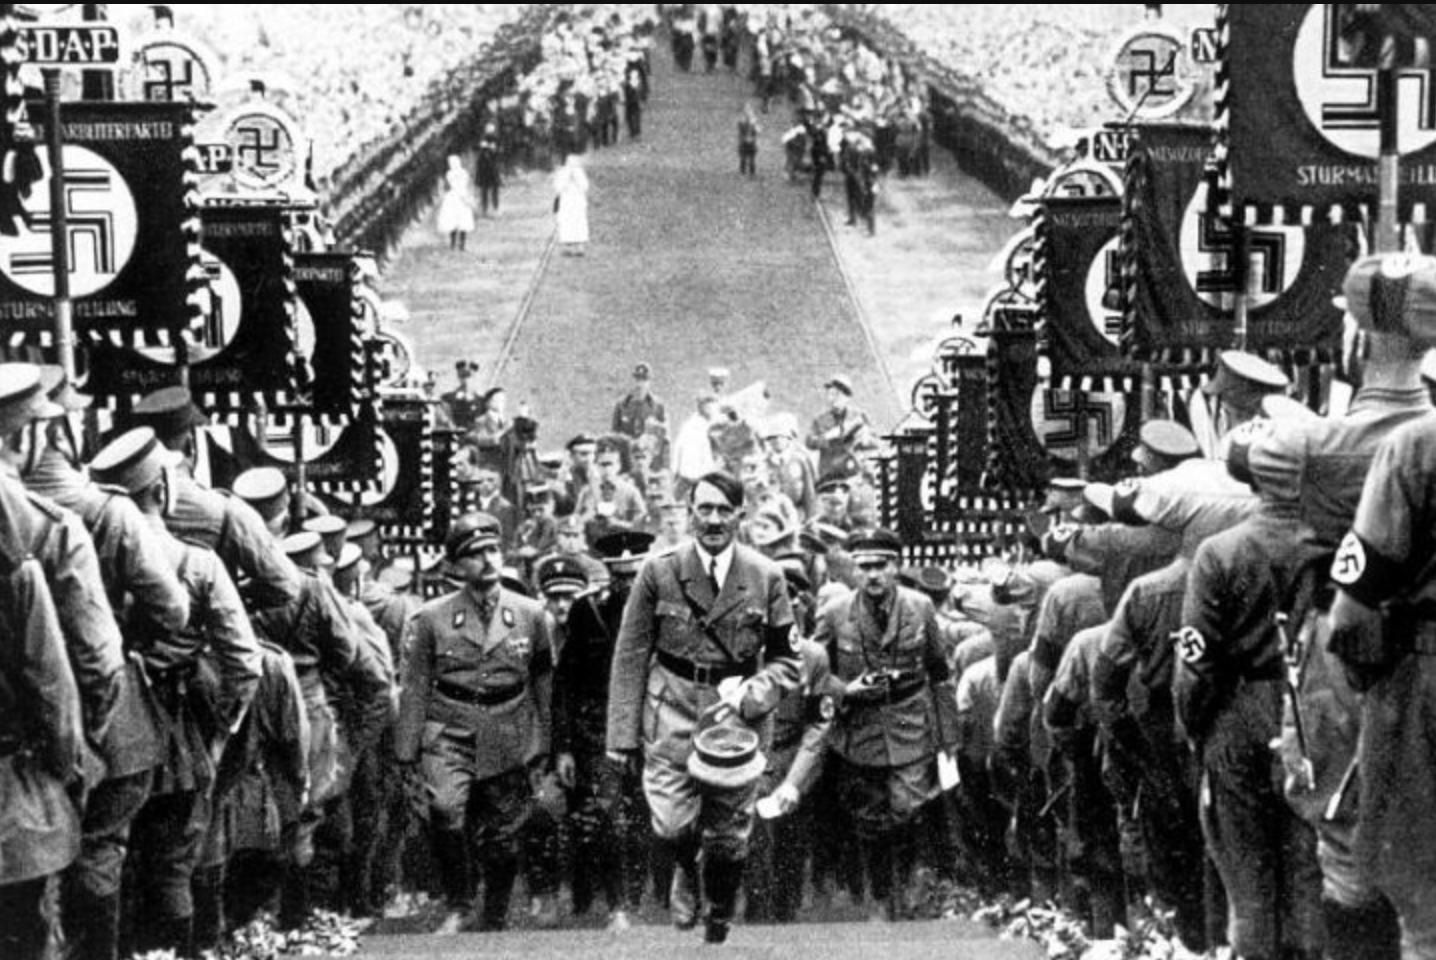 Hitler rally Image public domain